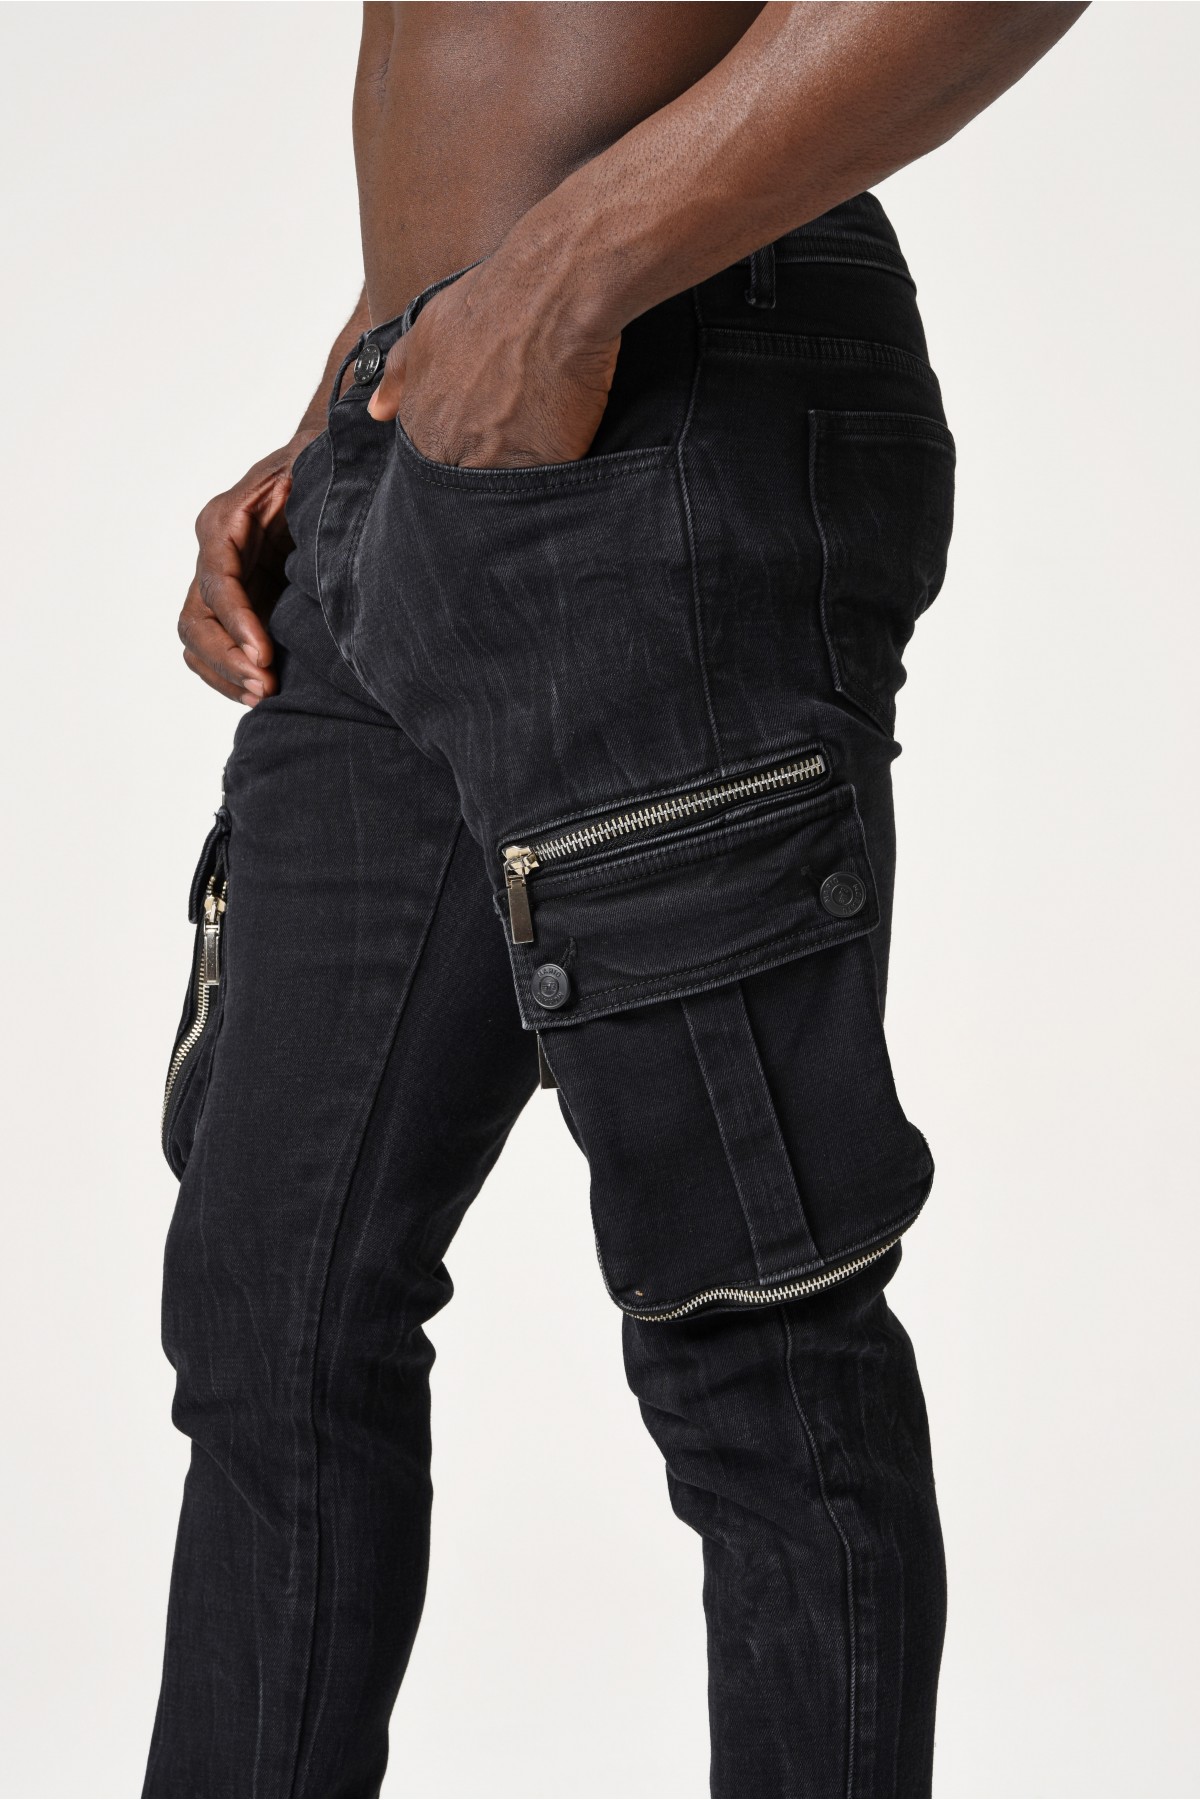 Erkek Denim Pantolon - Belde Siyah morato etiketi ve kargo cep - Koyu Gri